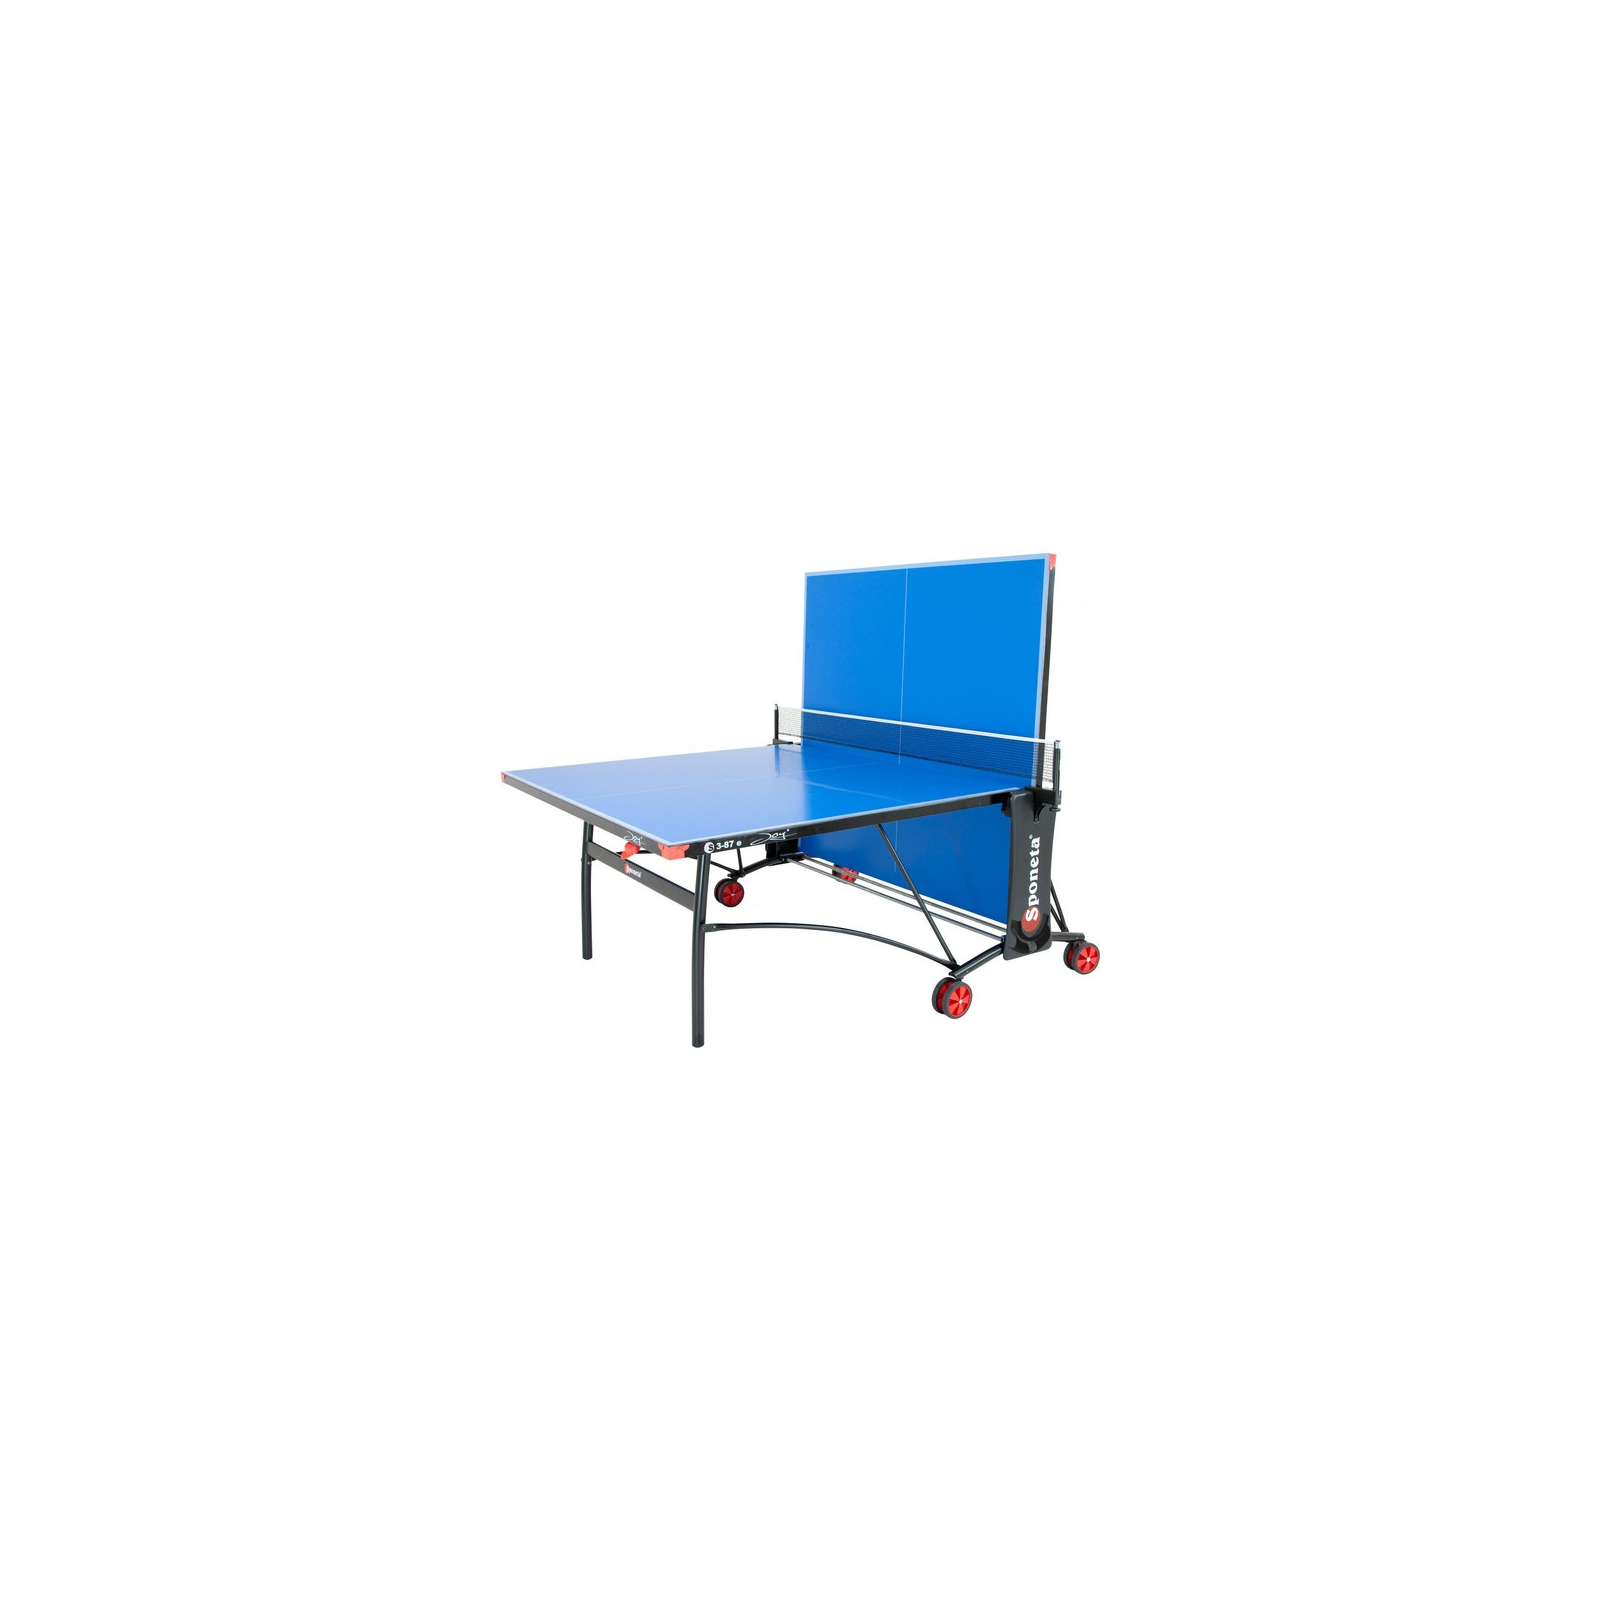 Теннисный стол Sponeta S3-87е изображение 3